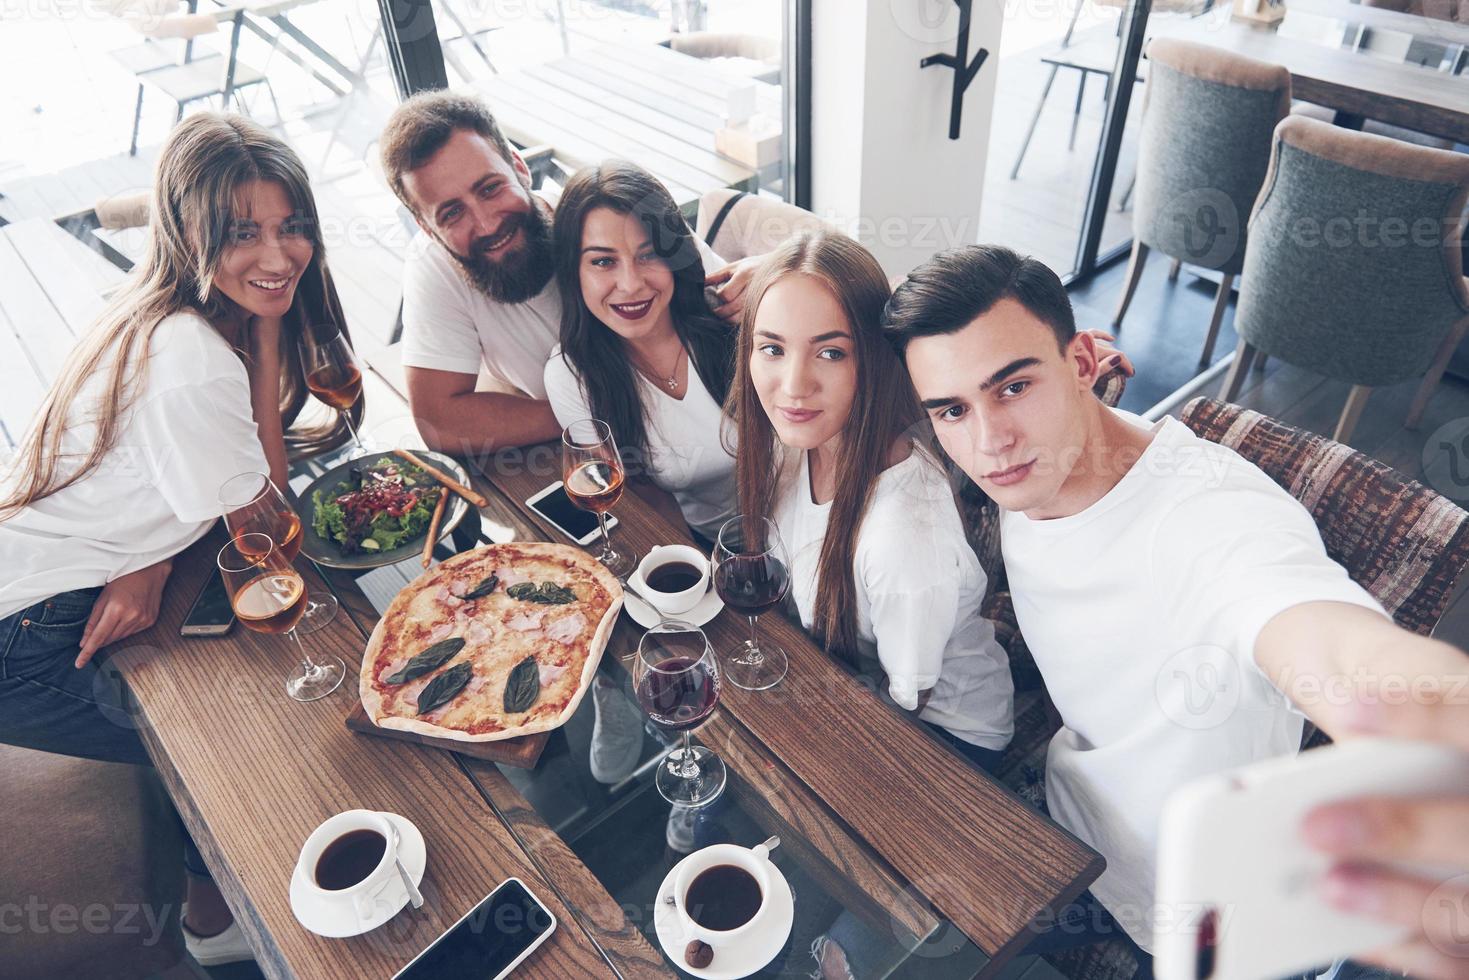 een groep mensen maakt een selfie-foto in een café. de beste vrienden verzamelden zich aan een eettafel, aten pizza en zongen verschillende drankjes foto